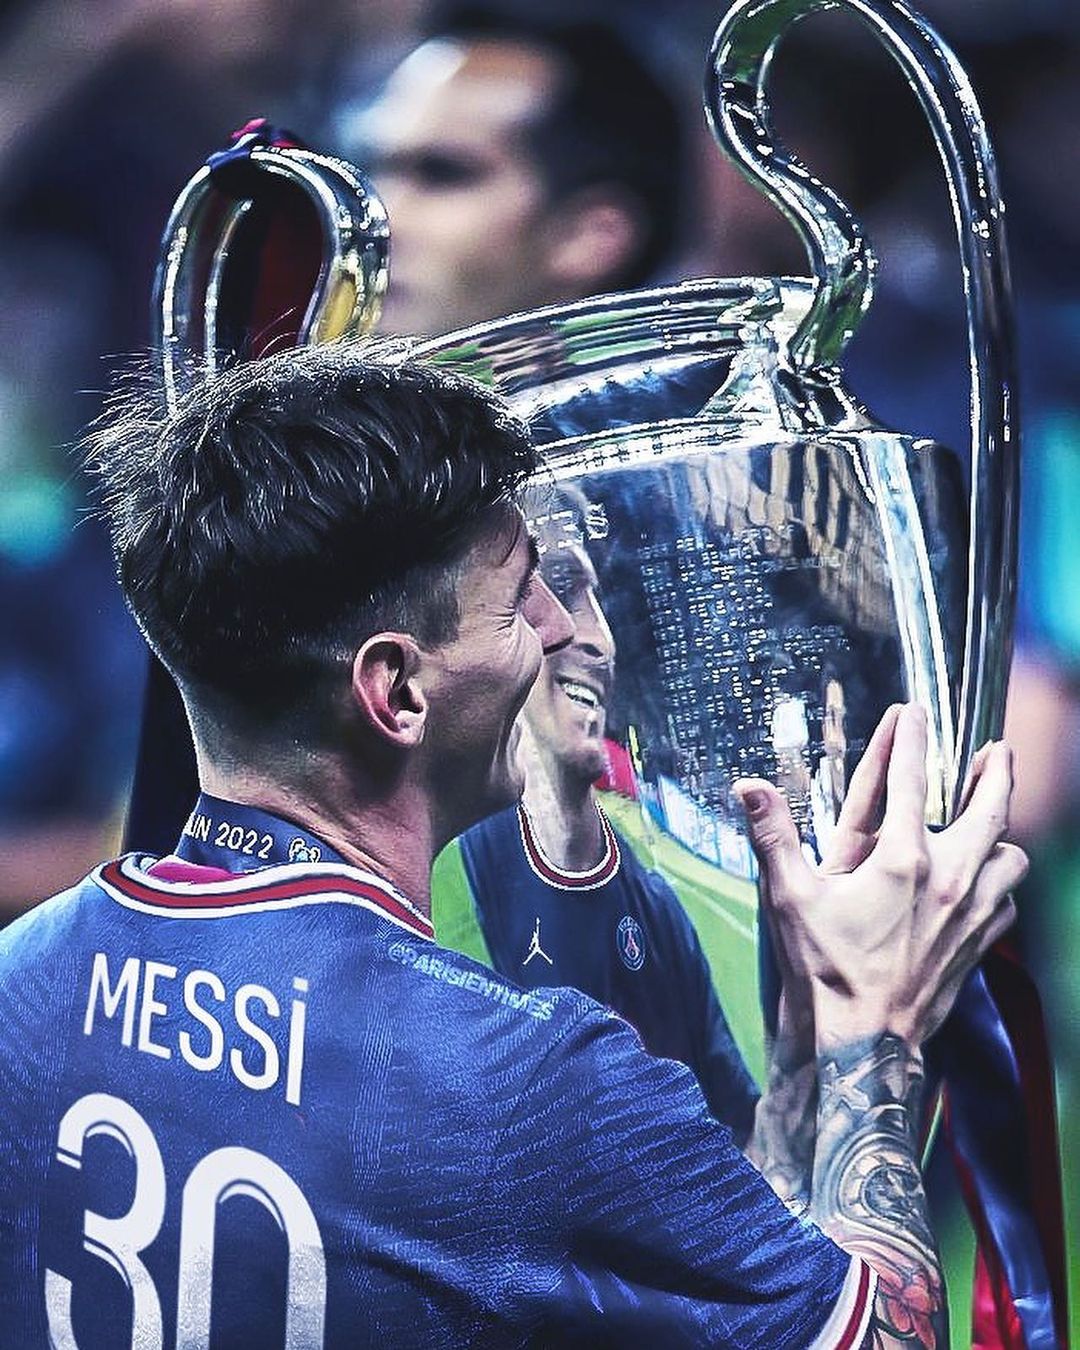 Hình nền Messi 4k năm 2024 là điểm đến tuyệt vời dành cho những người yêu bóng đá. Với những hình ảnh nổi bật và sắc nét, bạn sẽ được tận hưởng trọn vẹn cảm giác ganh đua và sự kiêu hãnh của siêu sao Messi.